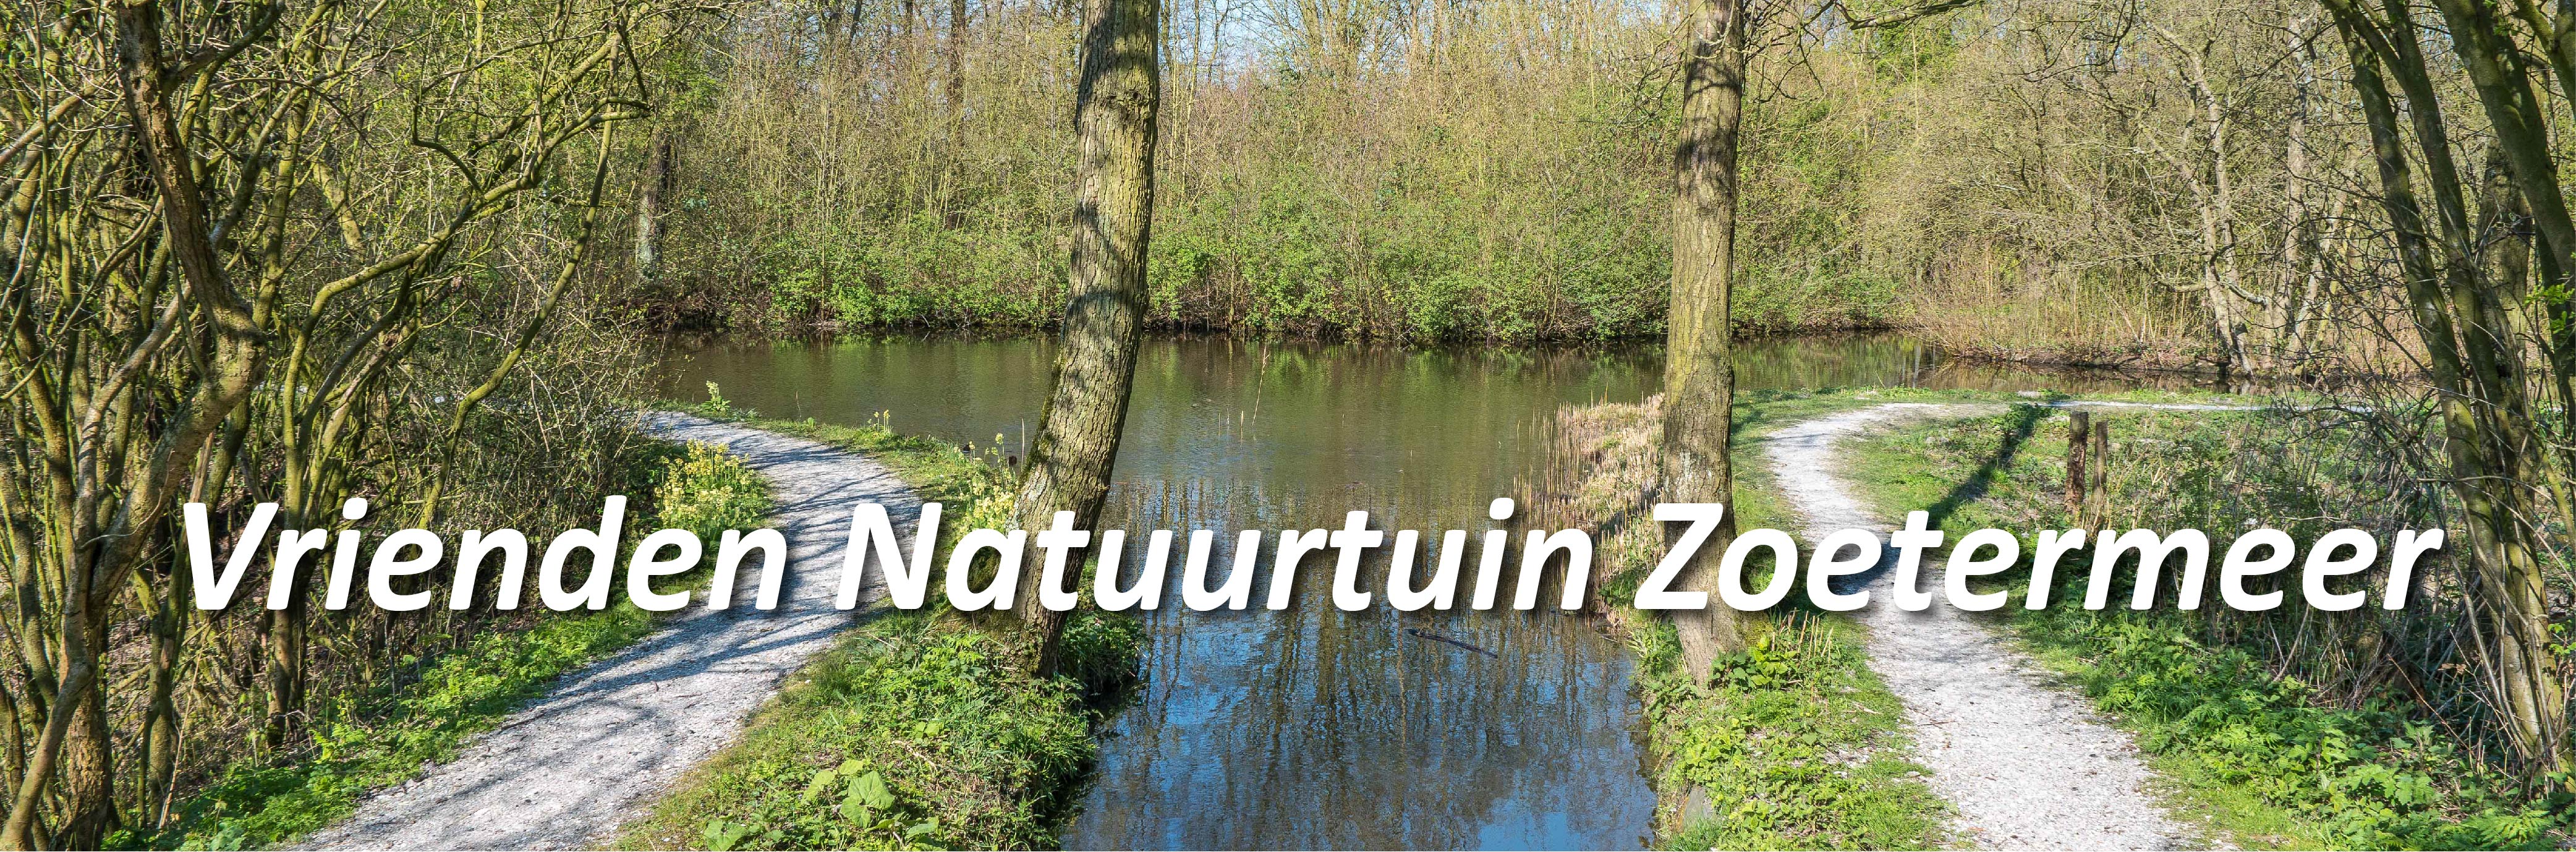 Vrienden Natuurtuin Zoetermeer